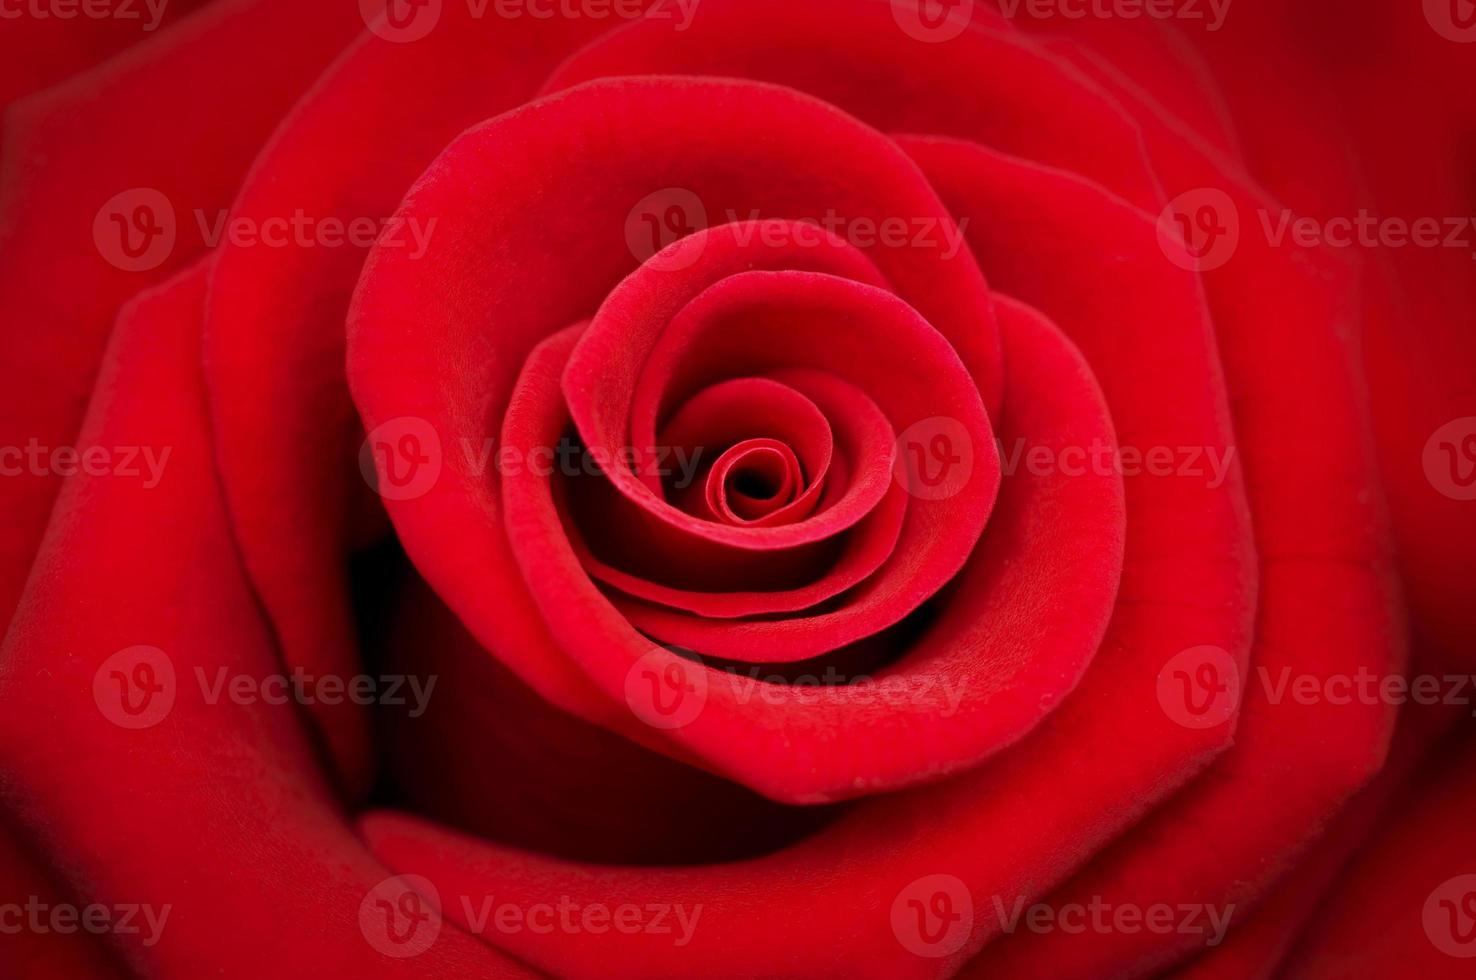 rosa roja sobre fondo rojo foto